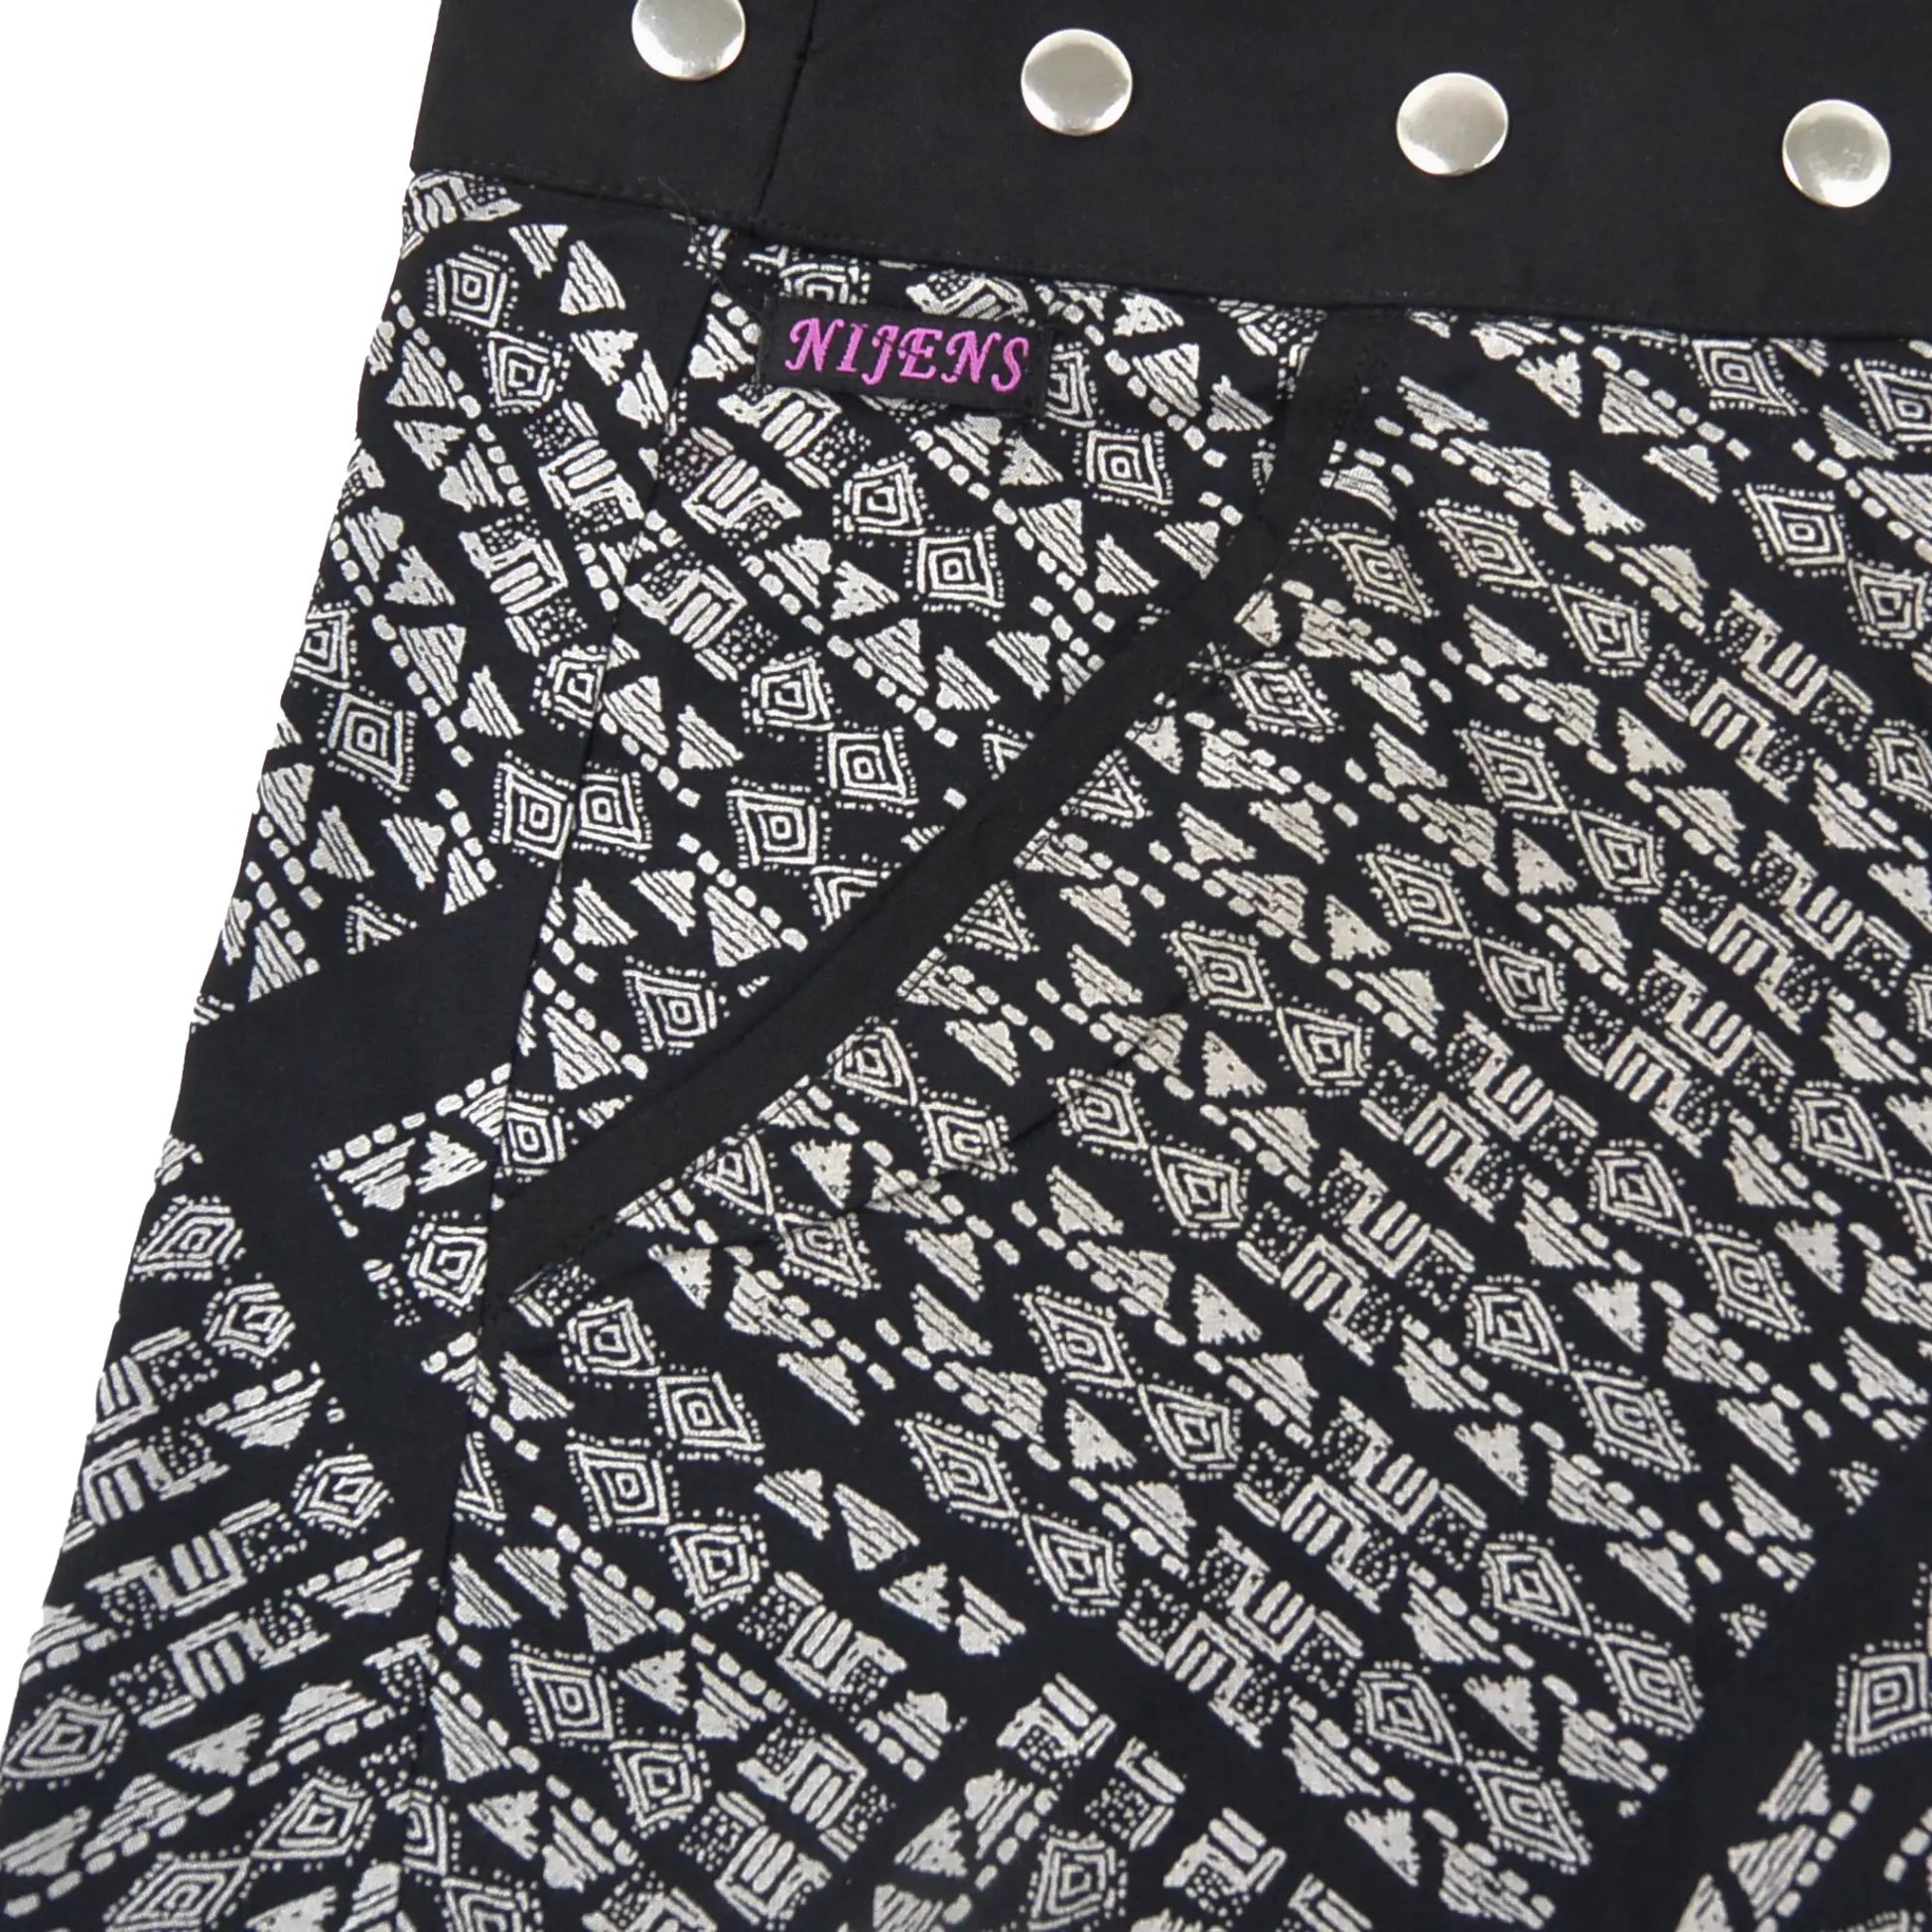 Wenderock, Wickelrock aus Rayonstoff in Schwarz mit weißem Muster. Der Umfang ist einstellbar mit einer Druckknopfleiste. Ausschnitt Eingrifftasche an der Seite.